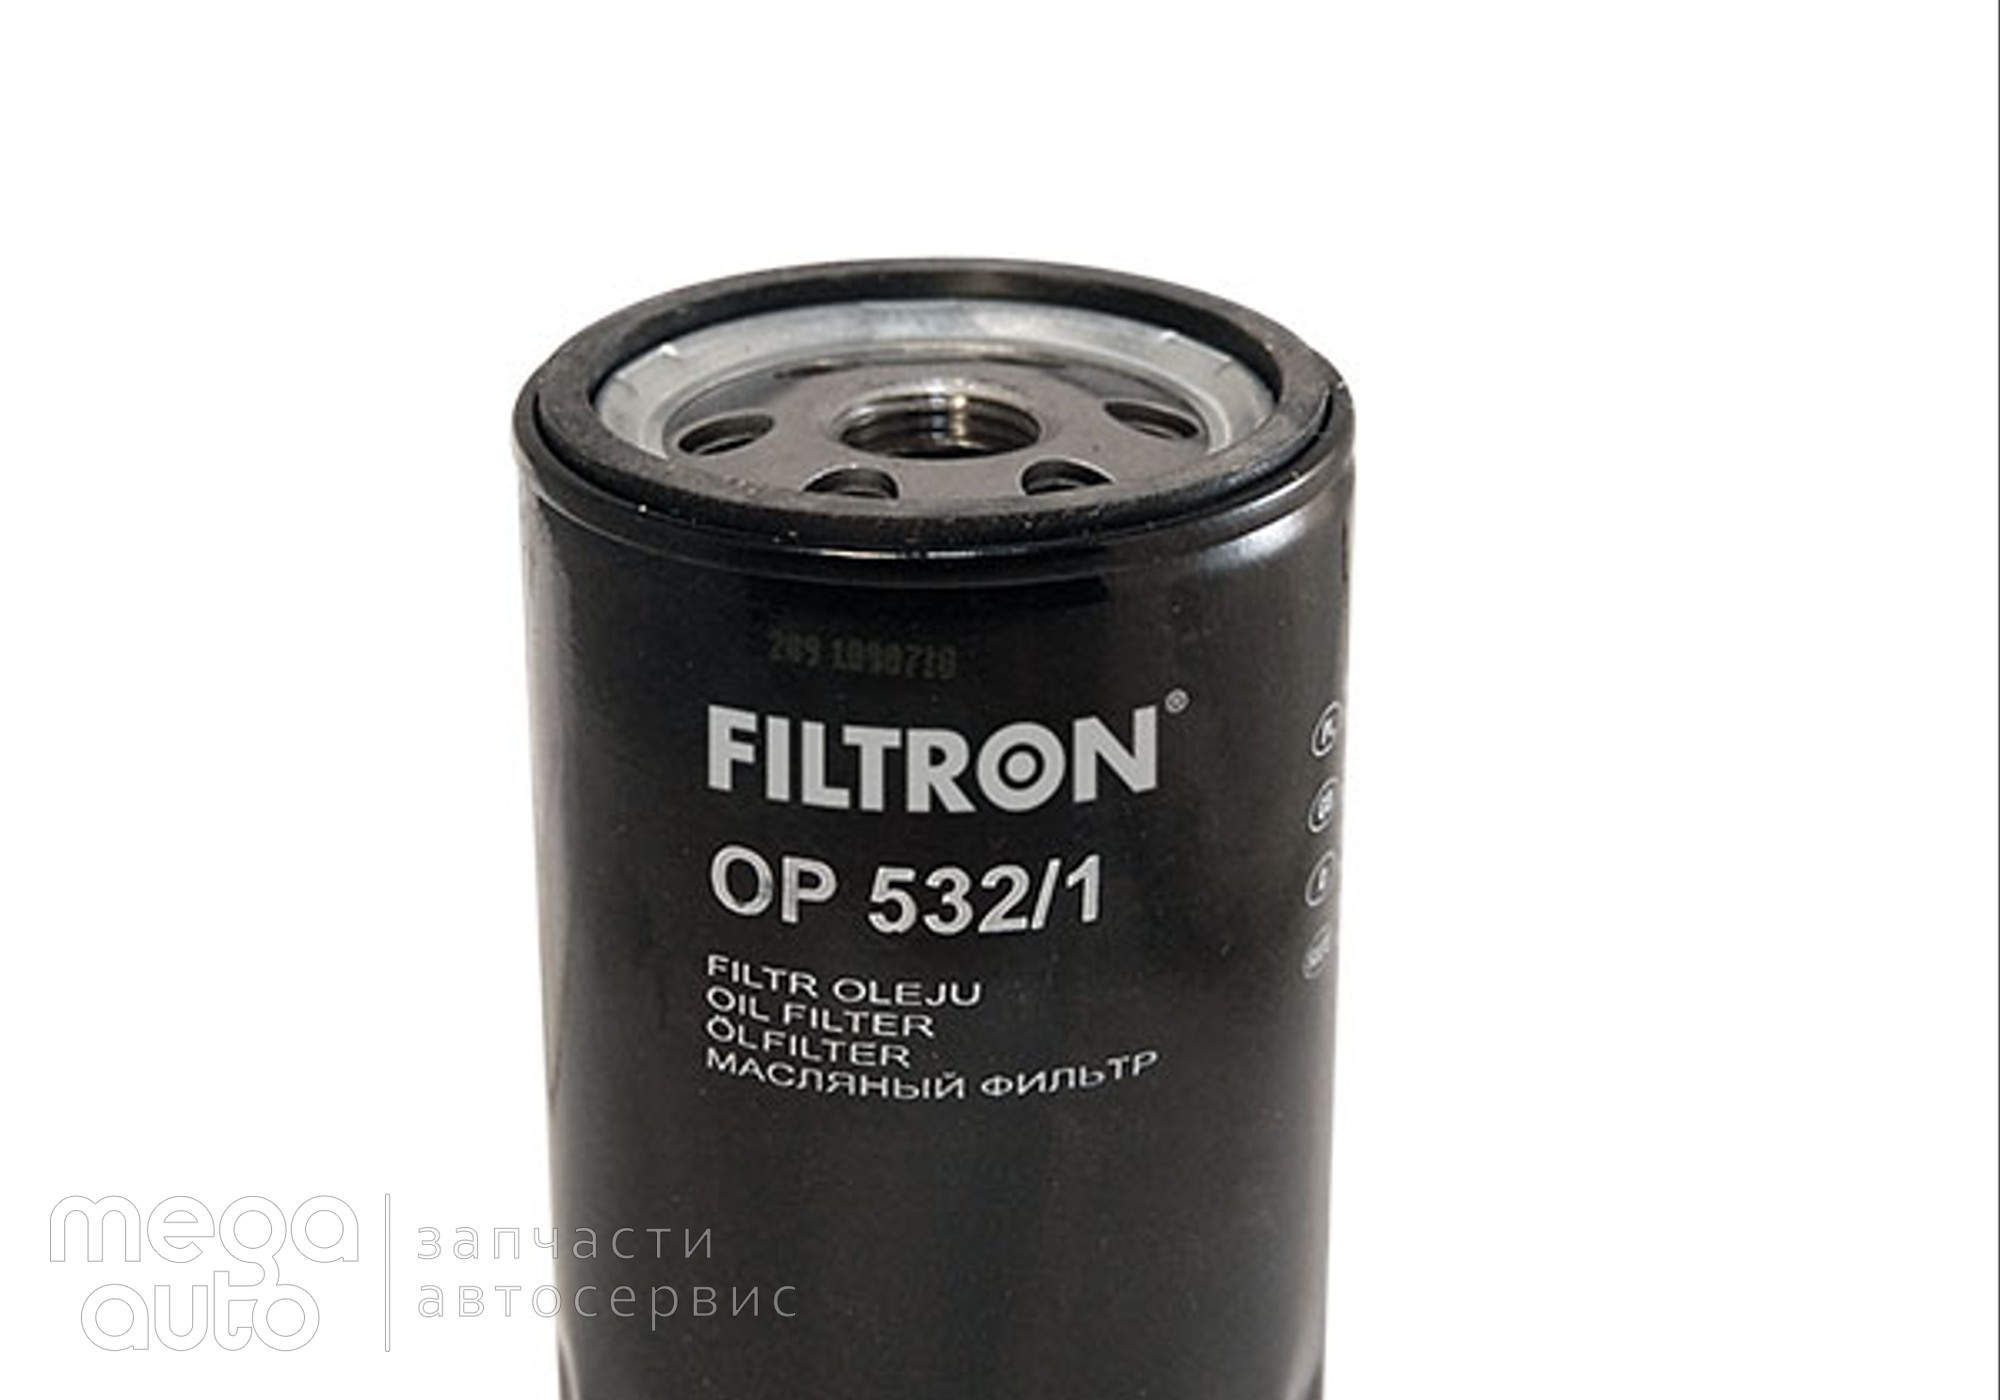 96565412 Масляный фильтр форд мондео, эскорт(Filtron) для Mazda 121 I (с 1987 по 1990)